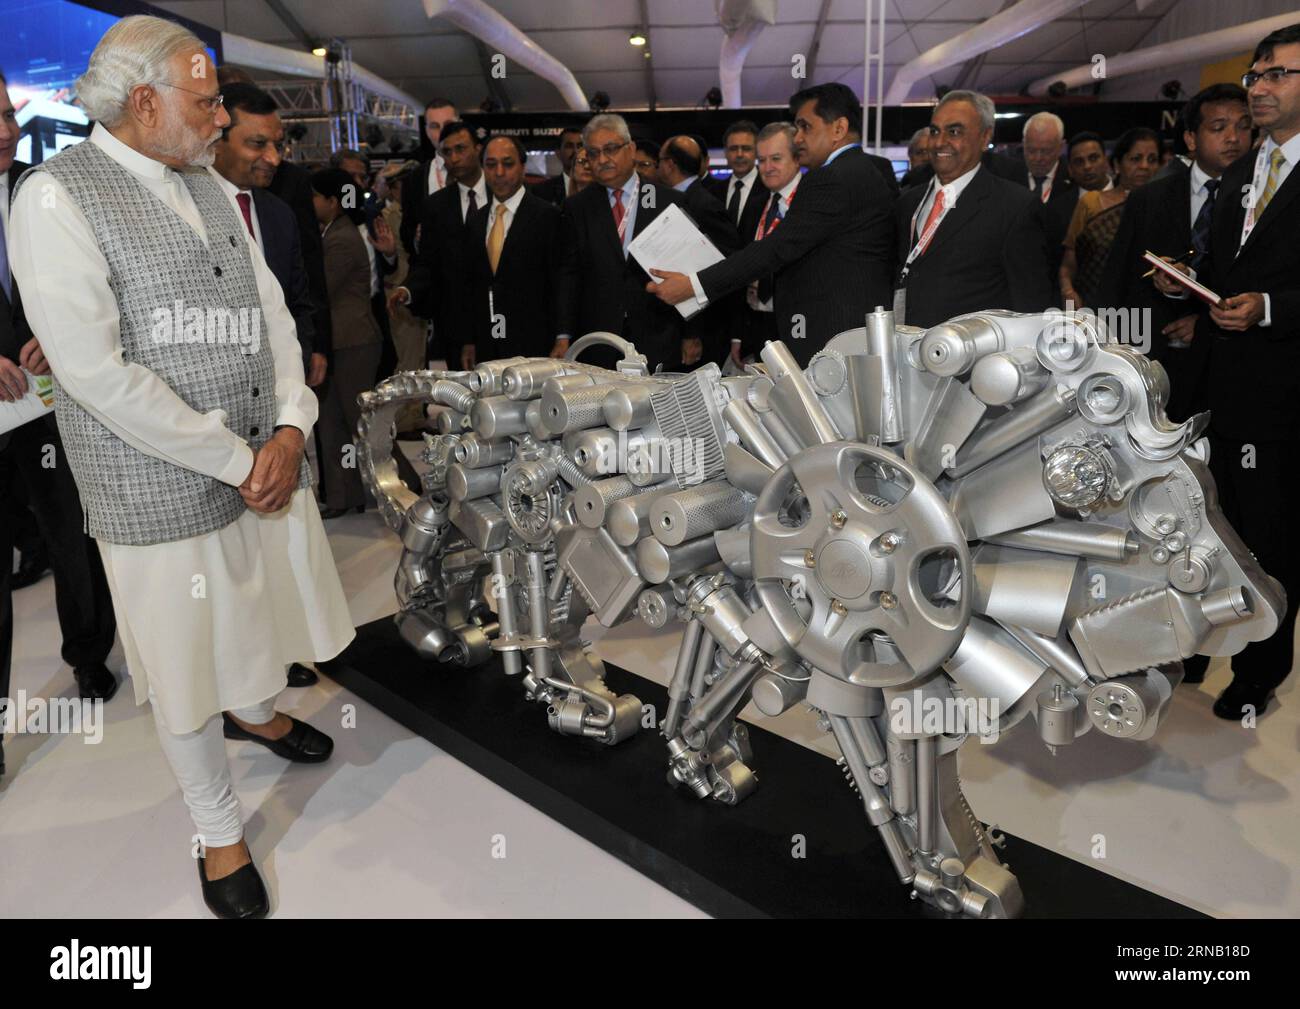 Le Premier ministre indien Narendra Modi (devant) regarde une statue de Lion, symbole de la semaine Make in India, au Make in India Center à Mumbai, en Inde, le 13 février 2016. L'événement de six jours, visant à montrer la puissance manufacturière indienne et à attirer des investissements de majors nationales et mondiales, a débuté samedi à Mumbai. )(dh) INDIA-MUMBAI-MAKE IN INDIA WEEK Stringer PUBLICATIONxNOTxINxCHN Indian Premier ministres Narendra modes Front regarde une Statue de Lion le symbole de la semaine Make in India AU Make in India Center à Mumbai Inde février 13 2016 l'événement de six jours visant À exposer Banque D'Images